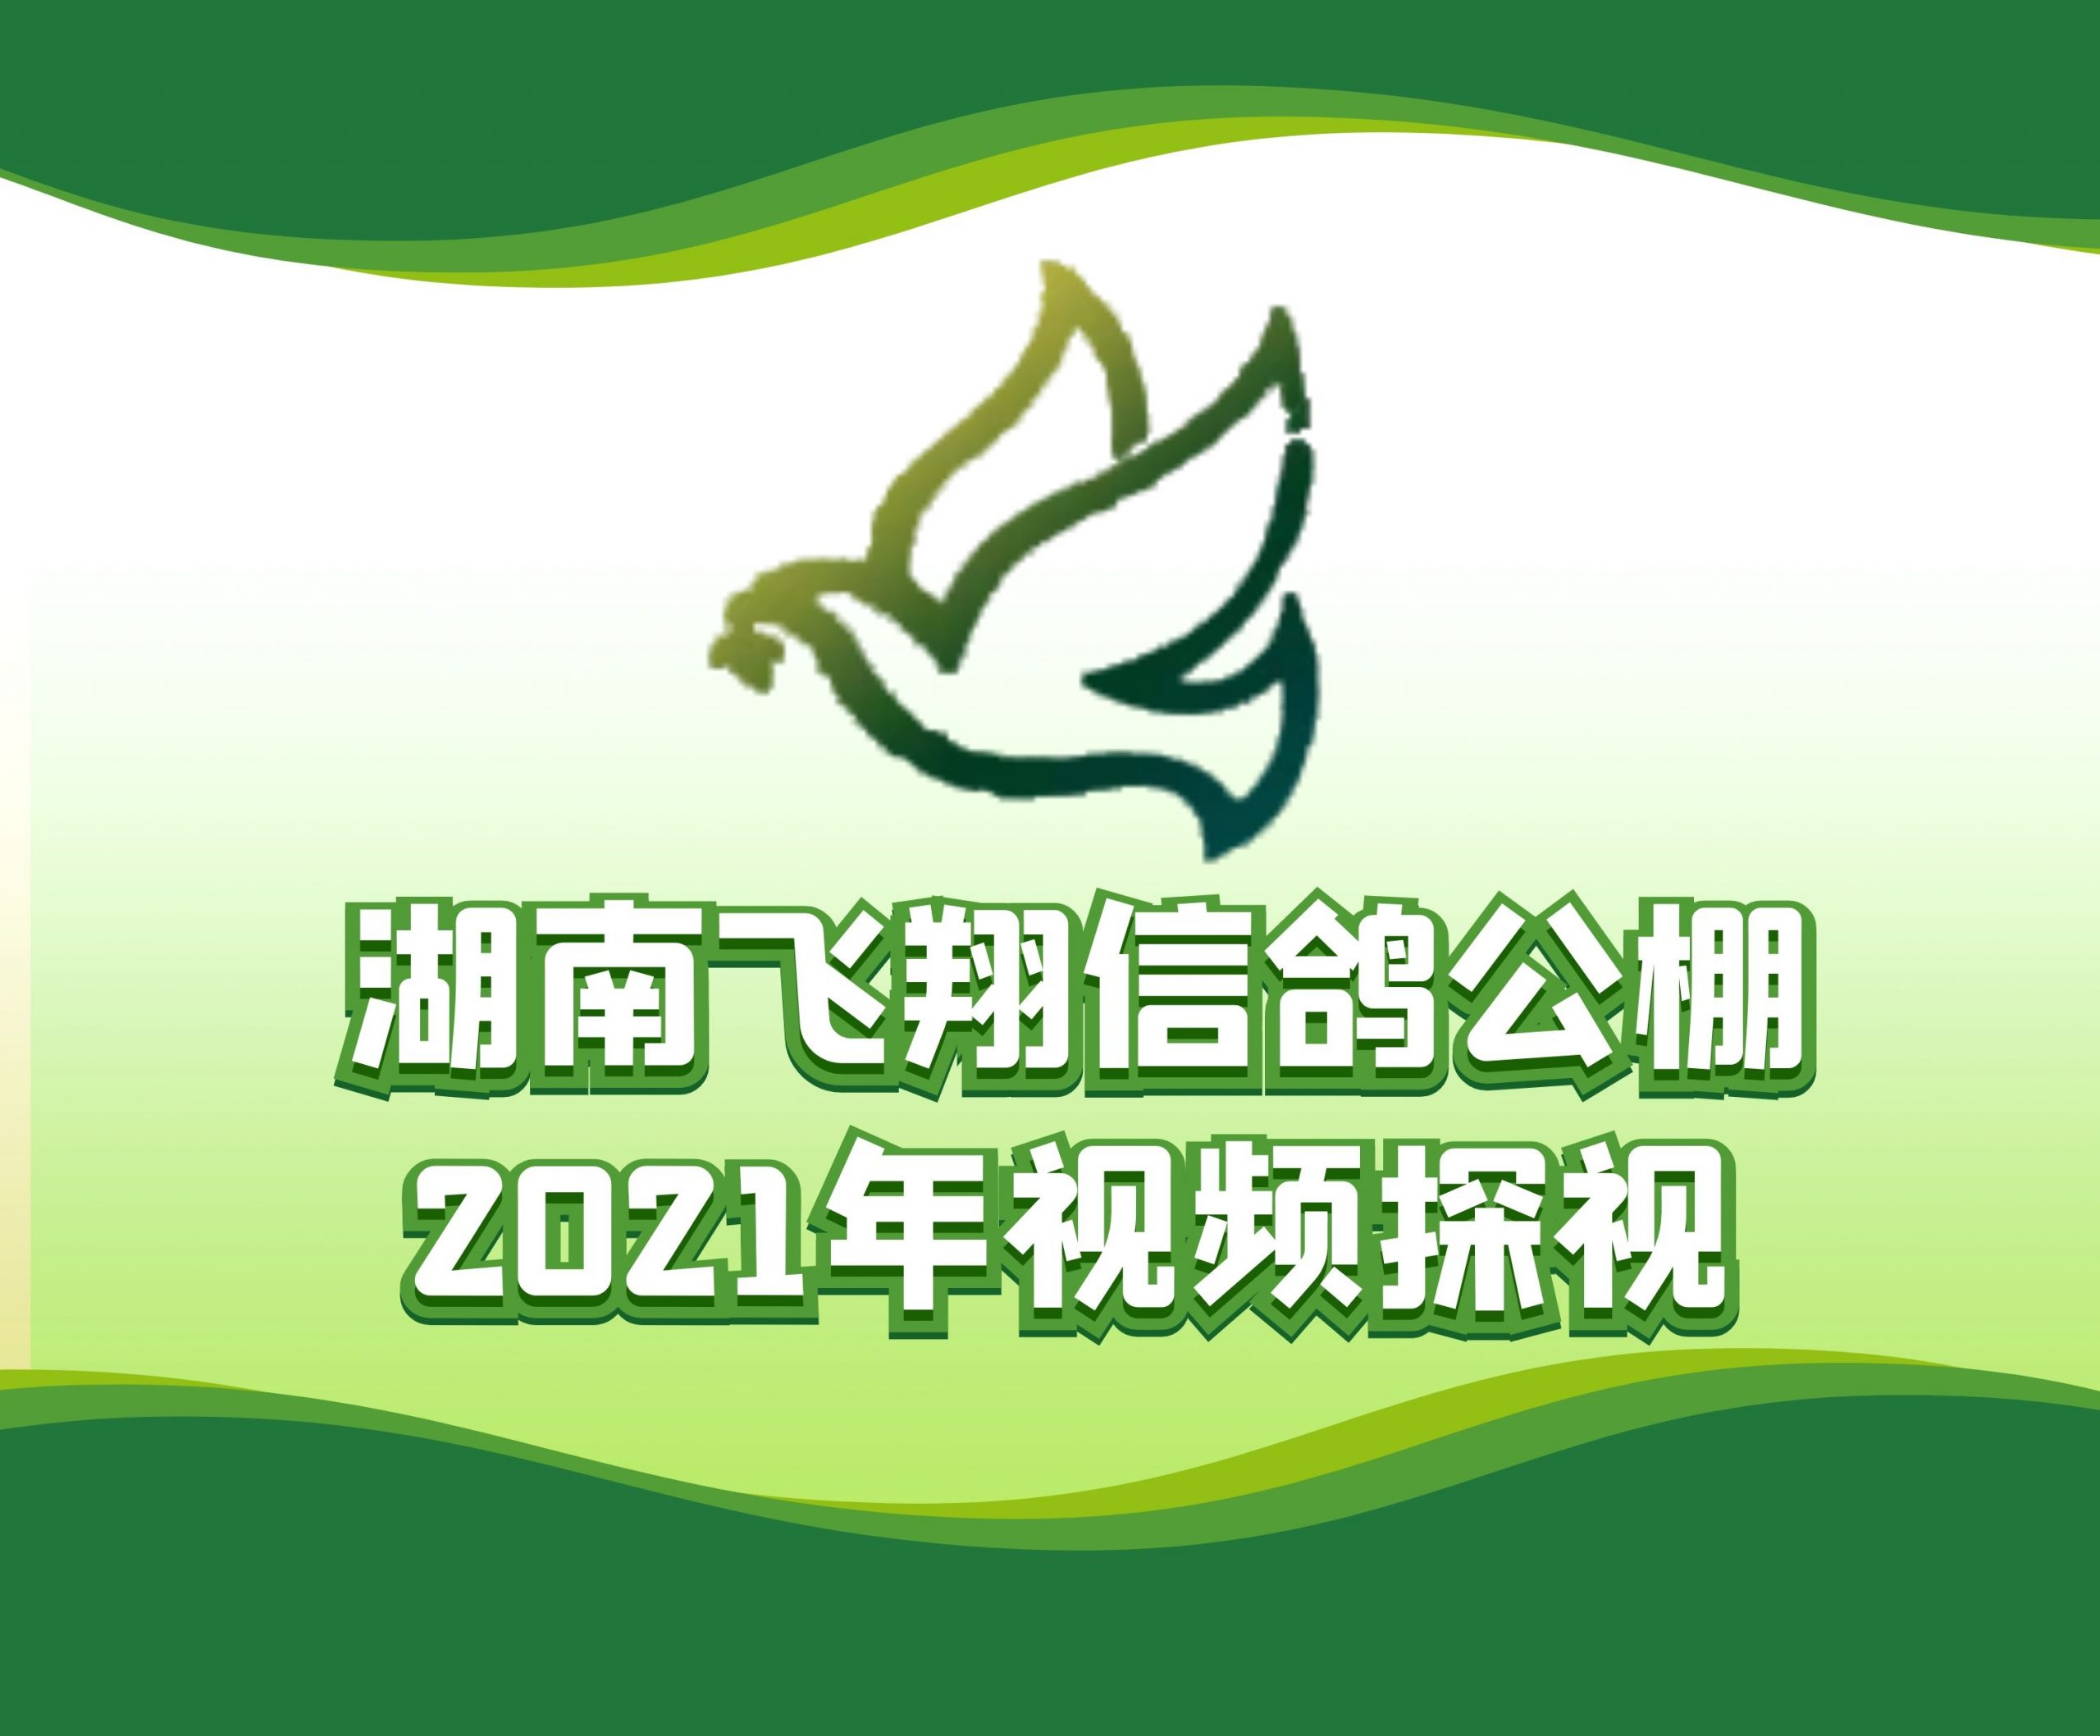 龙城赛鸽俱乐部谭志超-2021-32-0524599